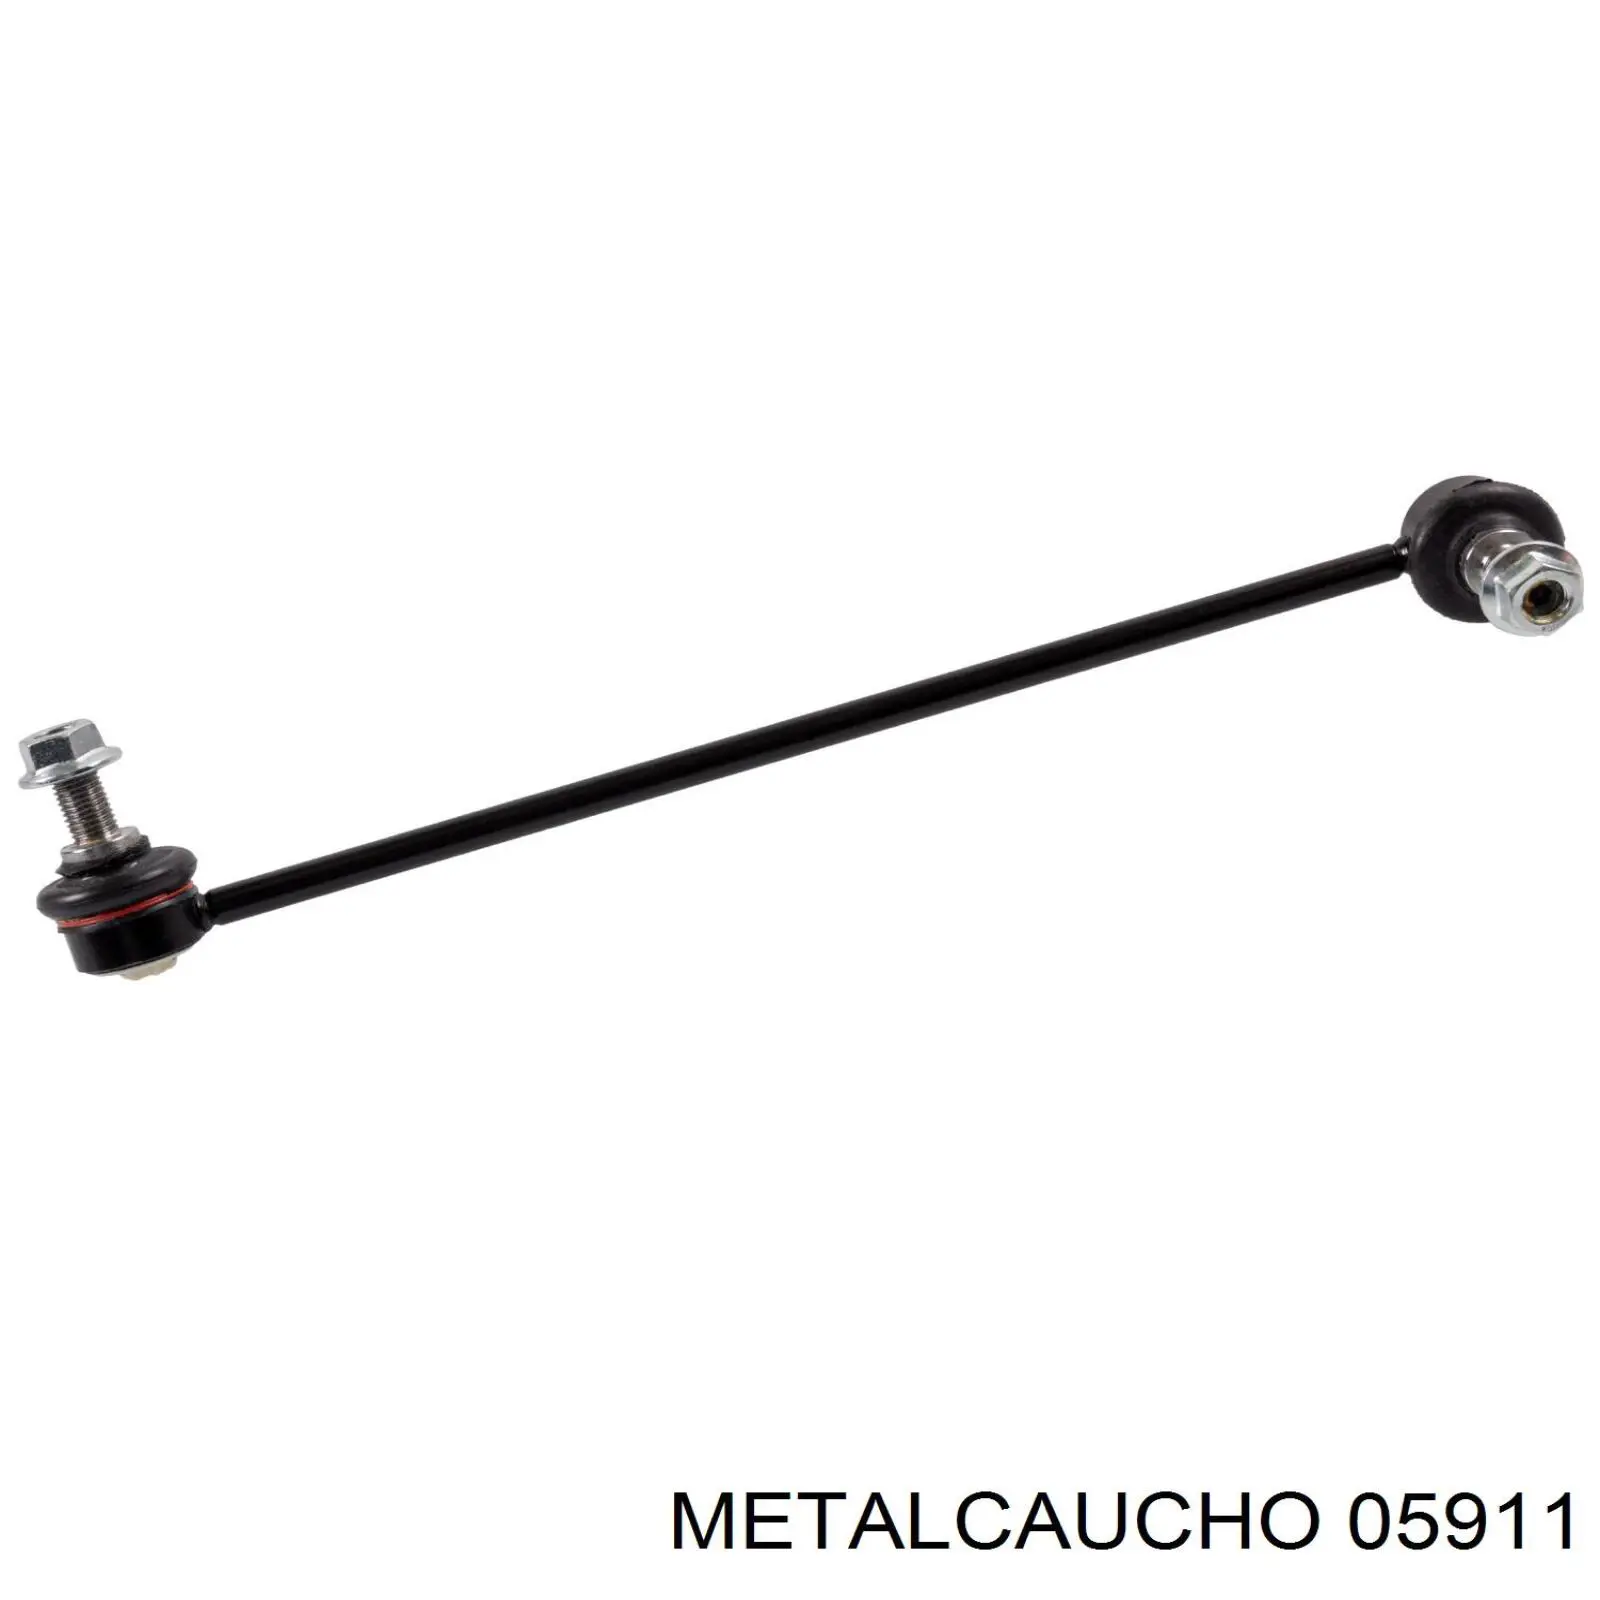 05911 Metalcaucho soporte de barra estabilizadora delantera